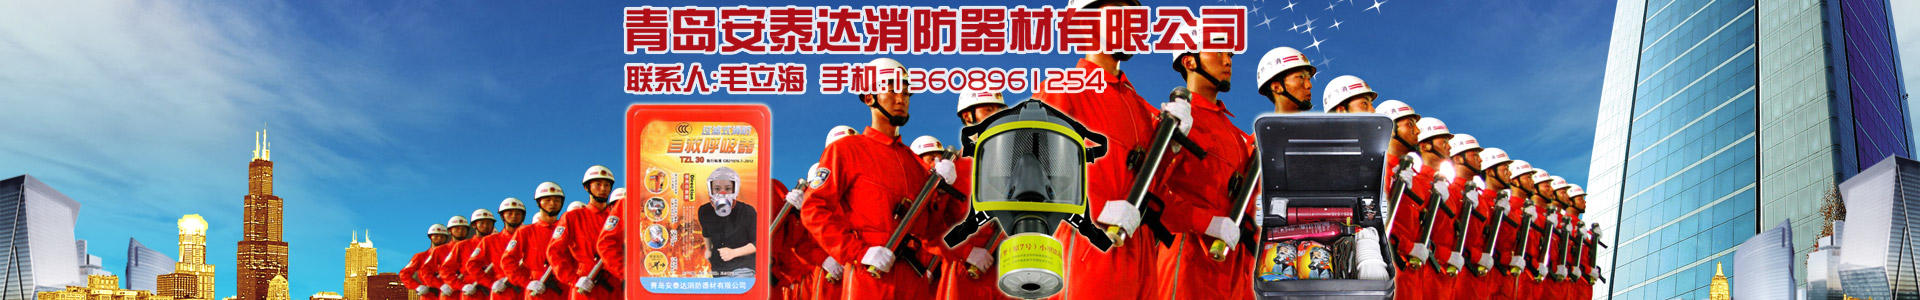 产品中心-青岛安泰达消防器材有限公司-